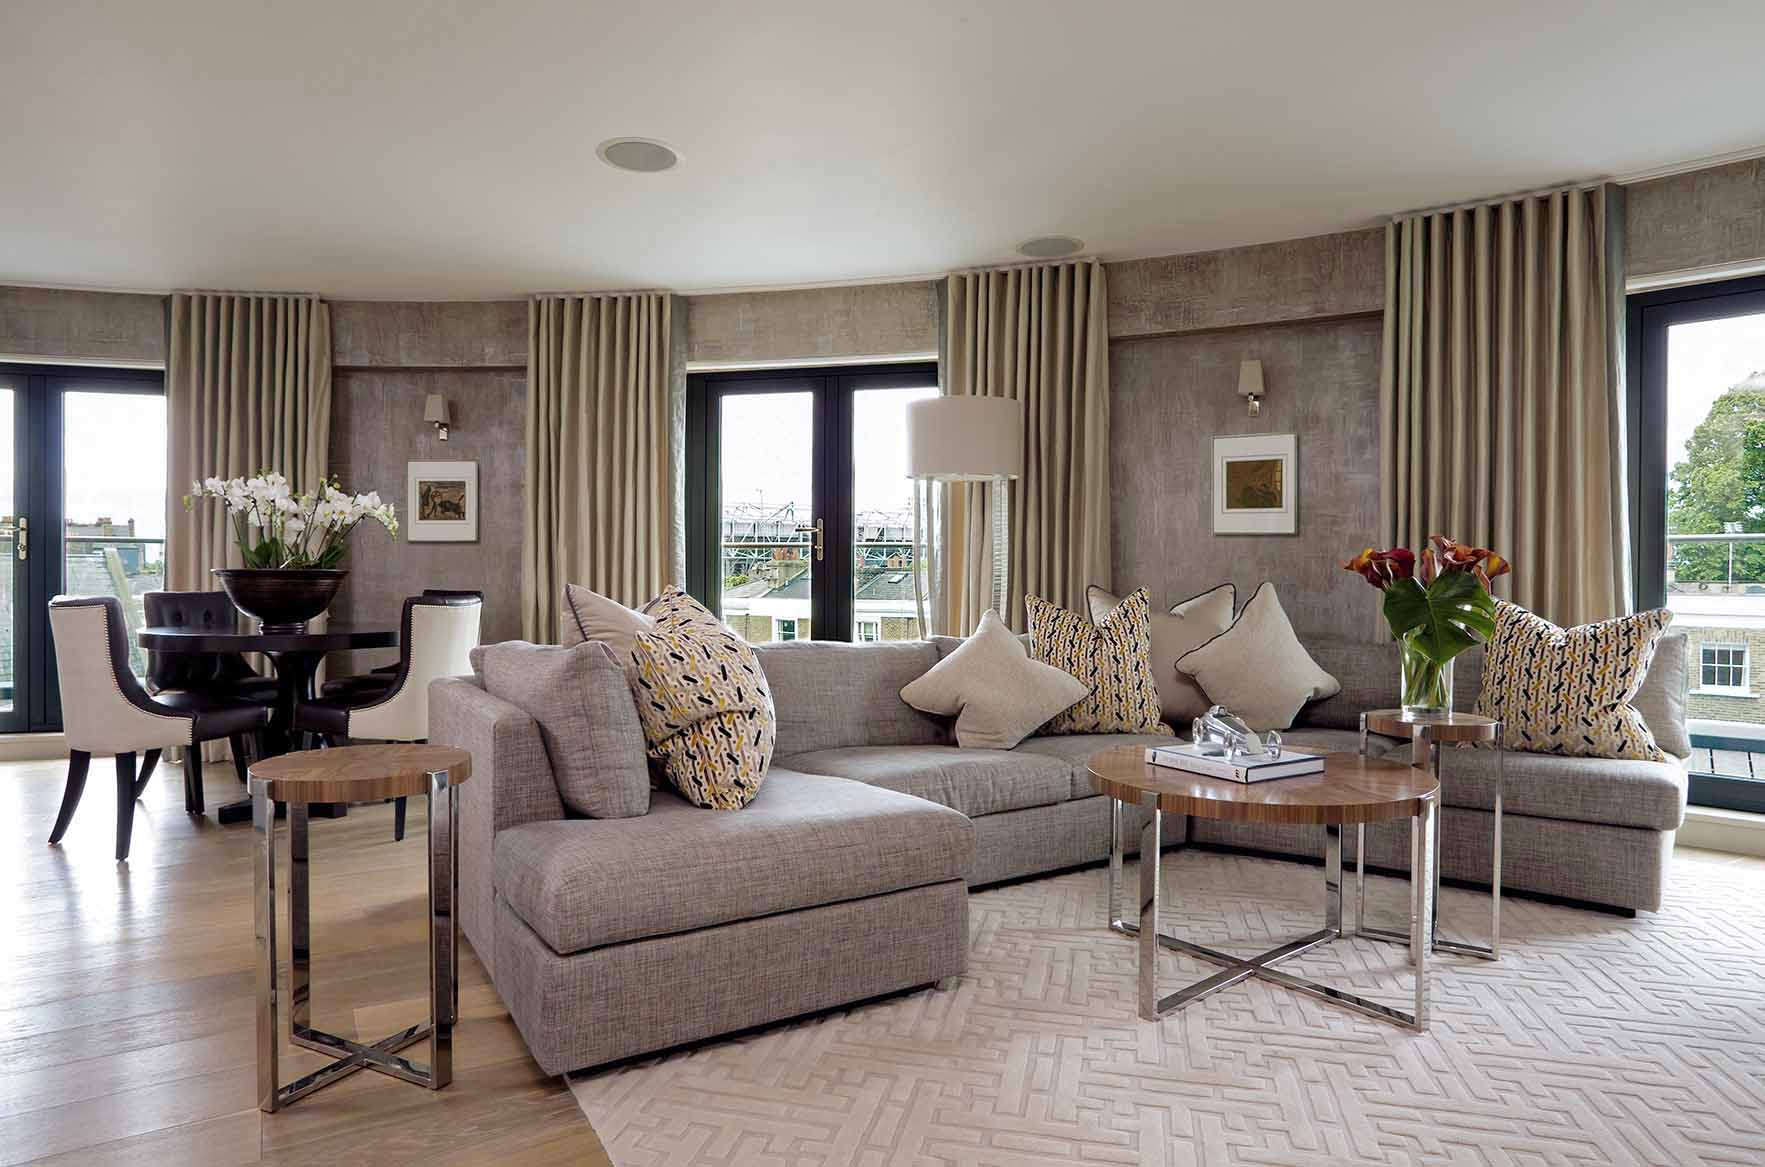 High end London apartment design by Rene Dekker, bespoke rug, linen upholstered sofa